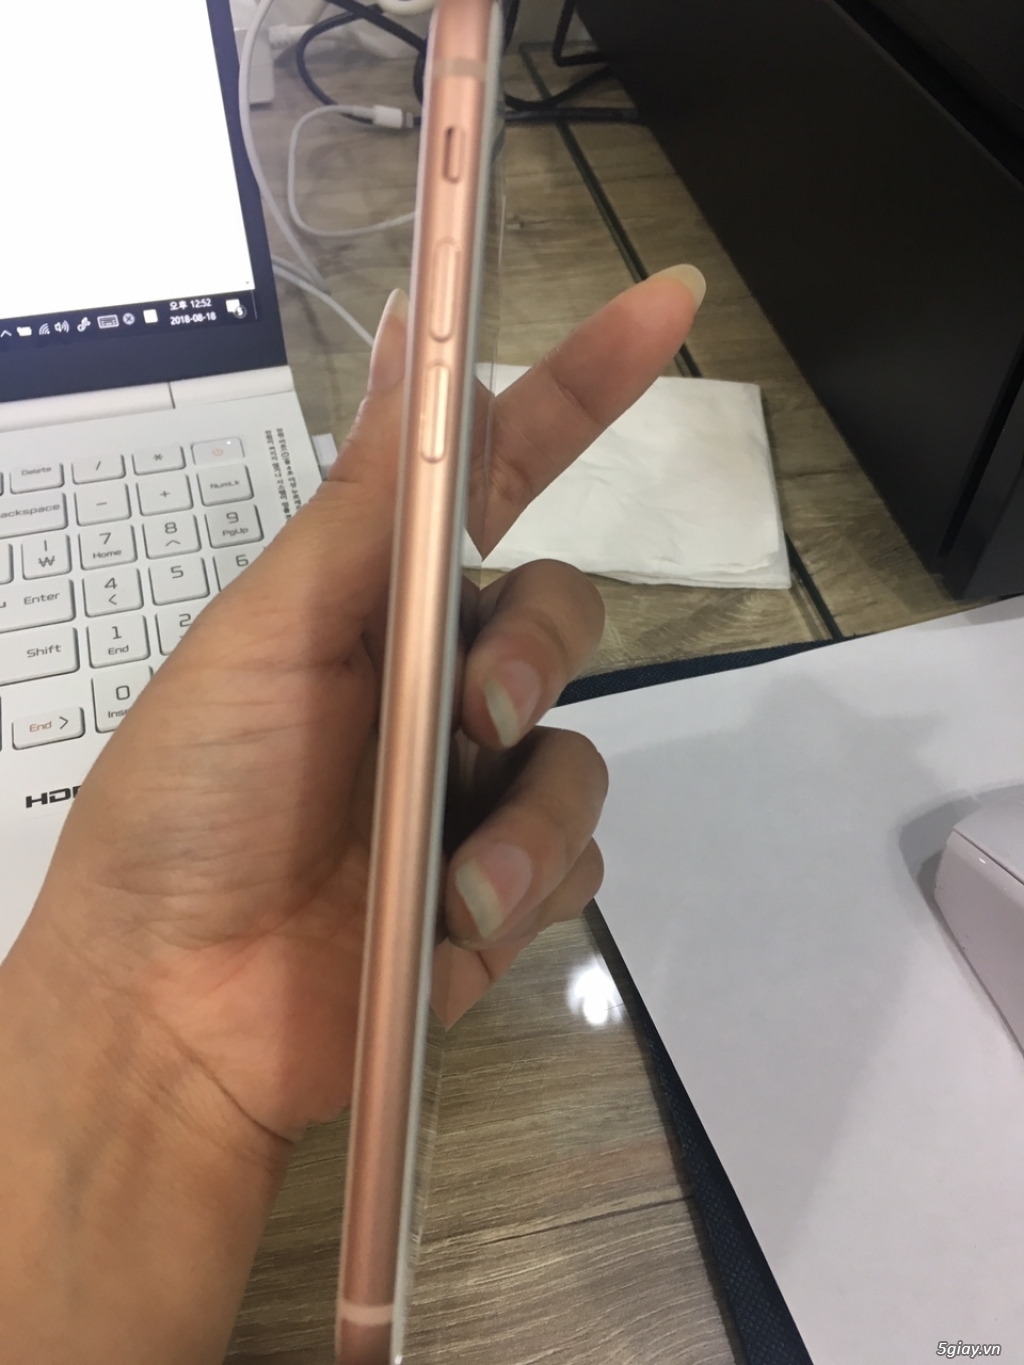 iphone 8plus 64gb vàng hồng đẹp lung linh zin như mới bảo hành - 2